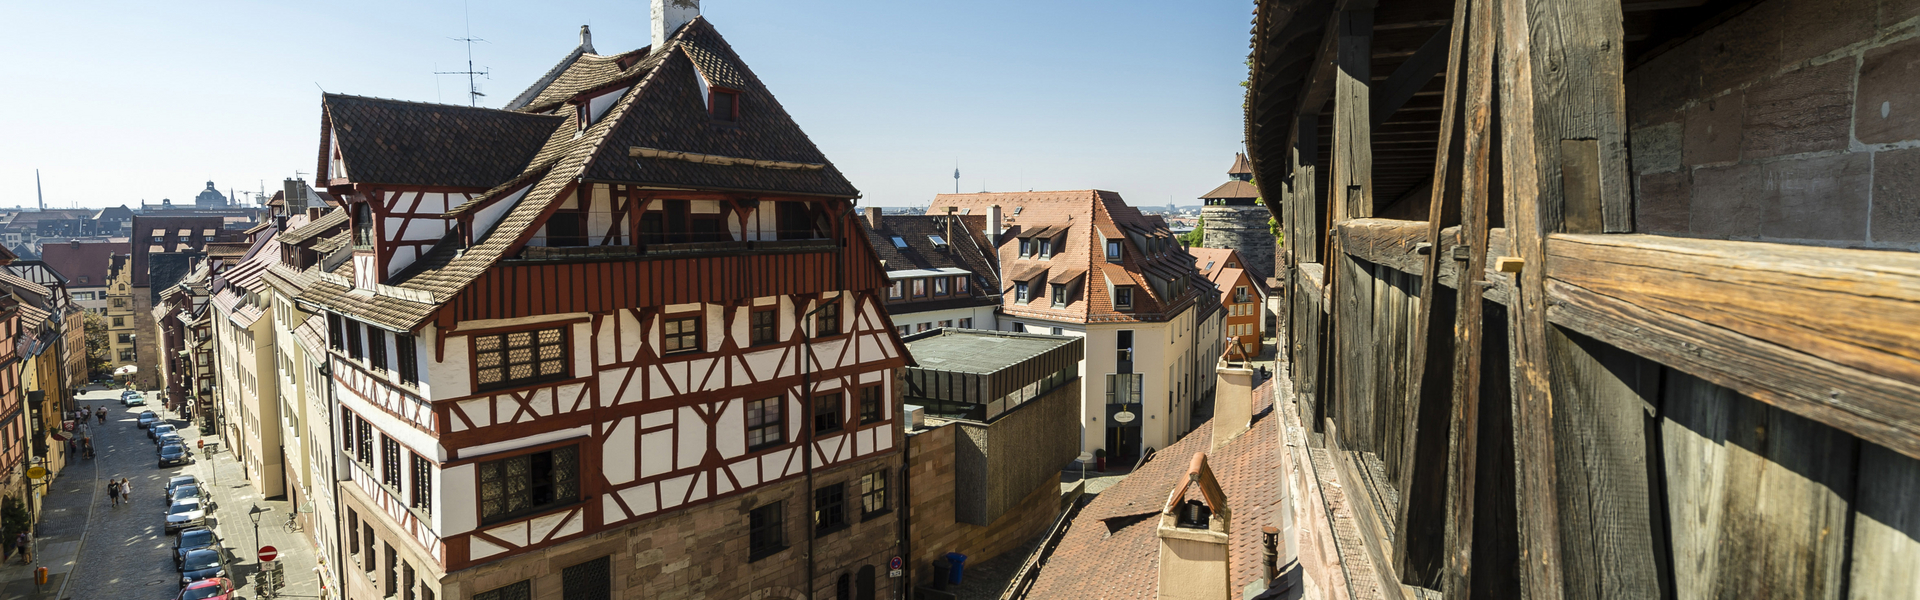 Blick von der Stadtmauer auf das Albrecht-Dürer-Haus